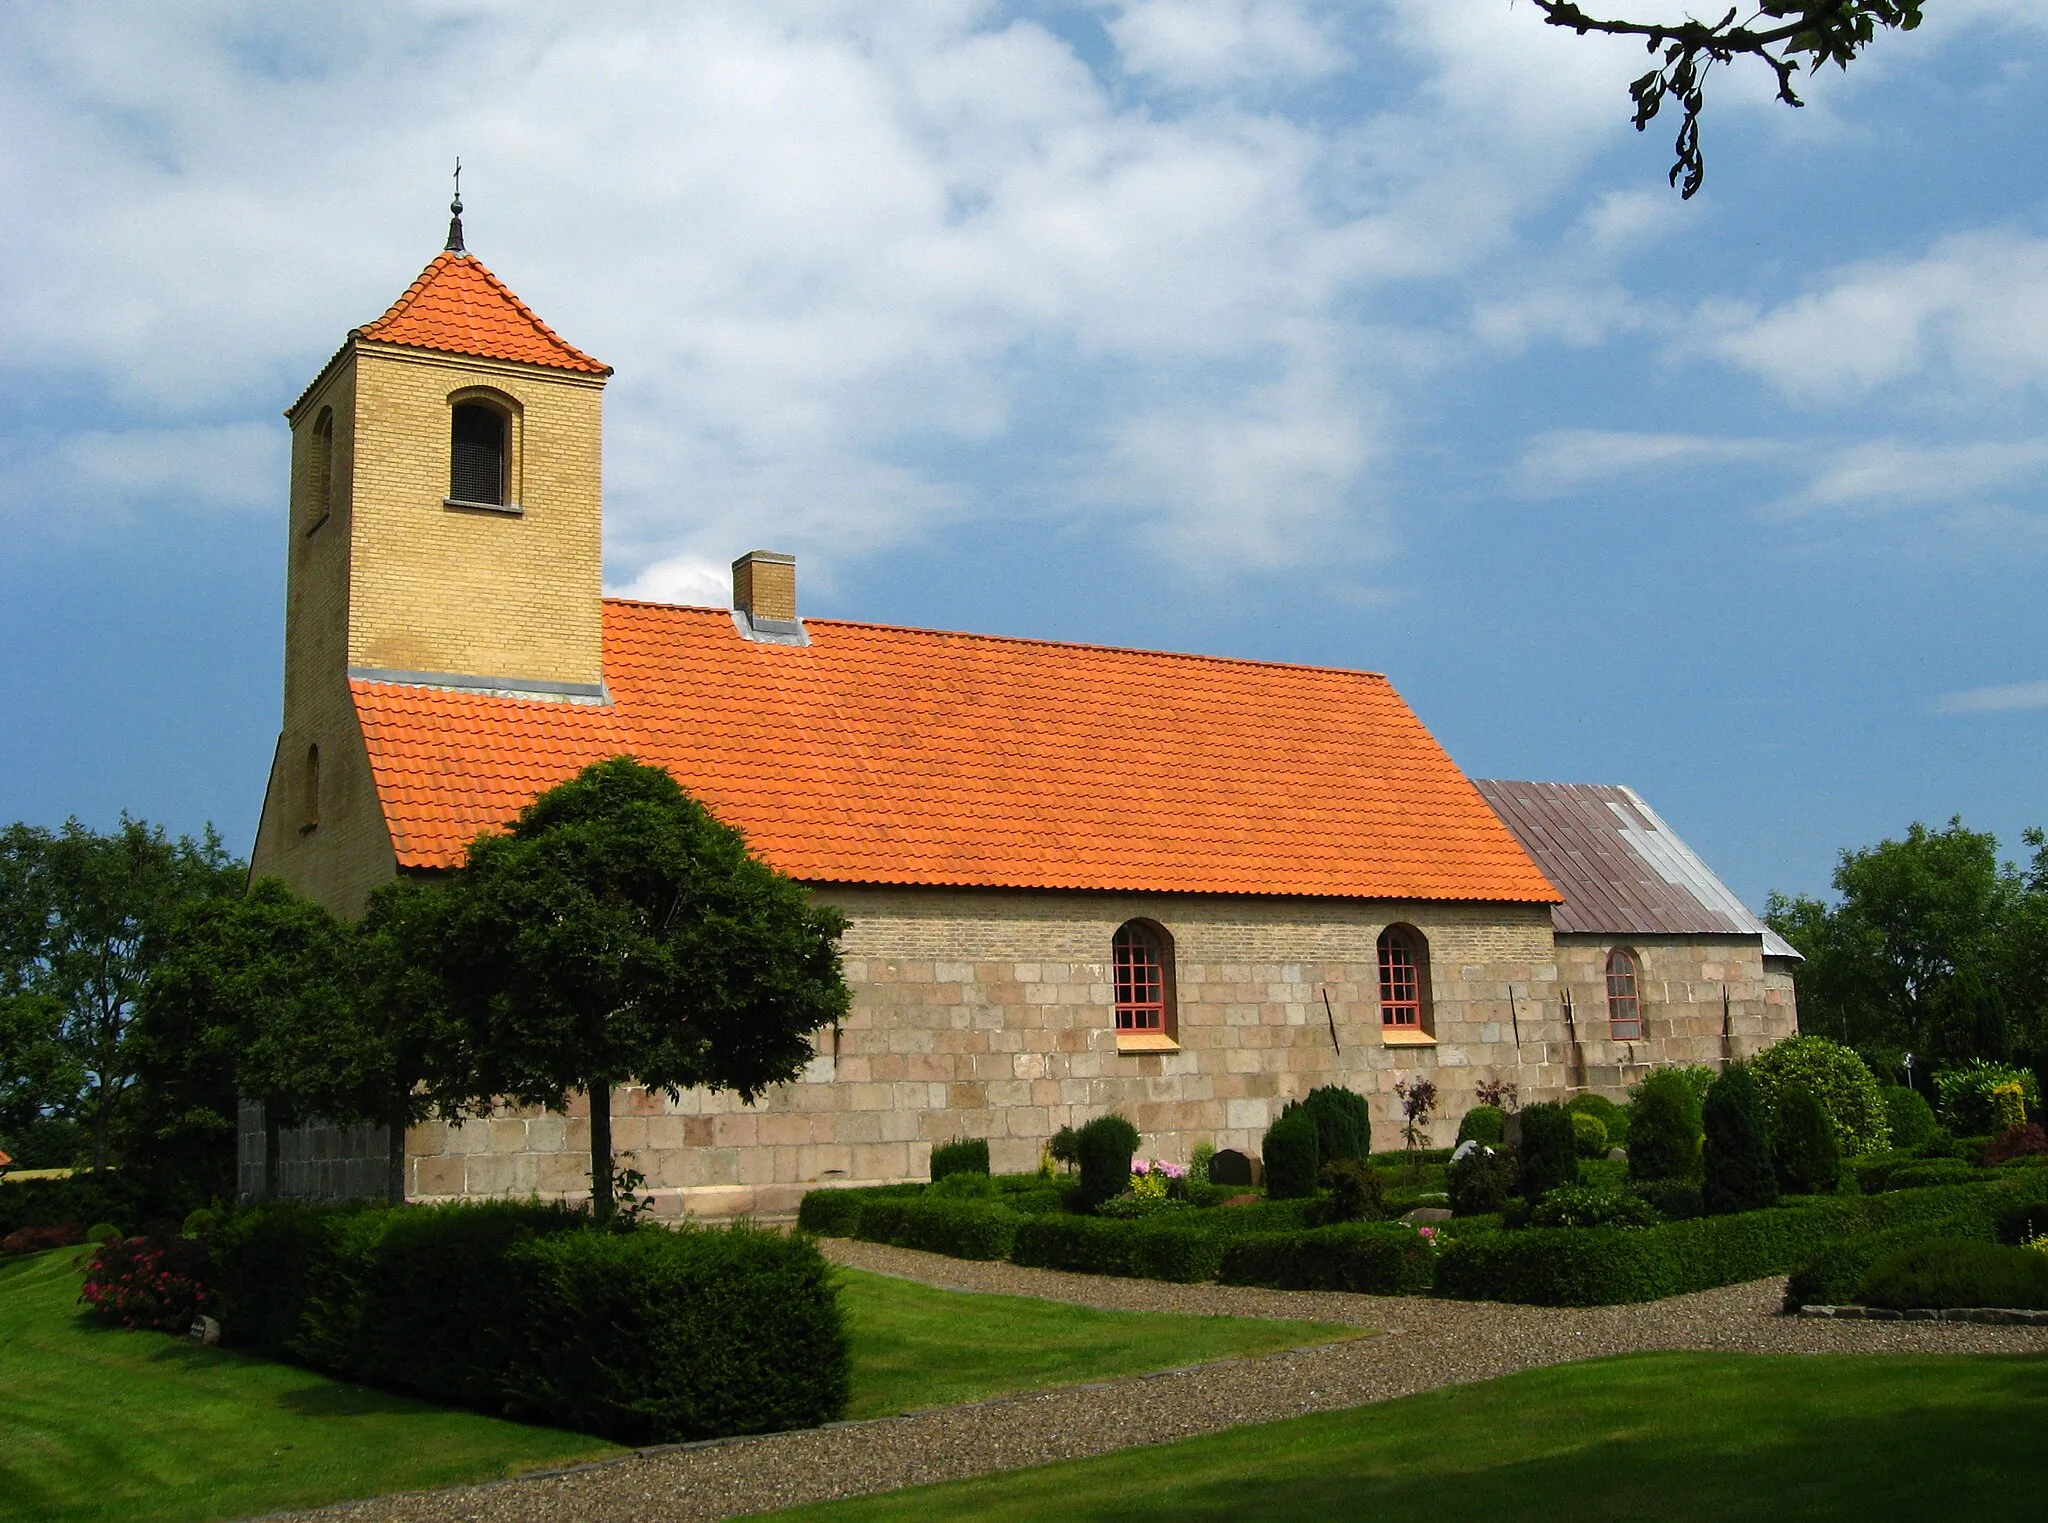 Photo showing: The church in Skraem, Northern Denmark